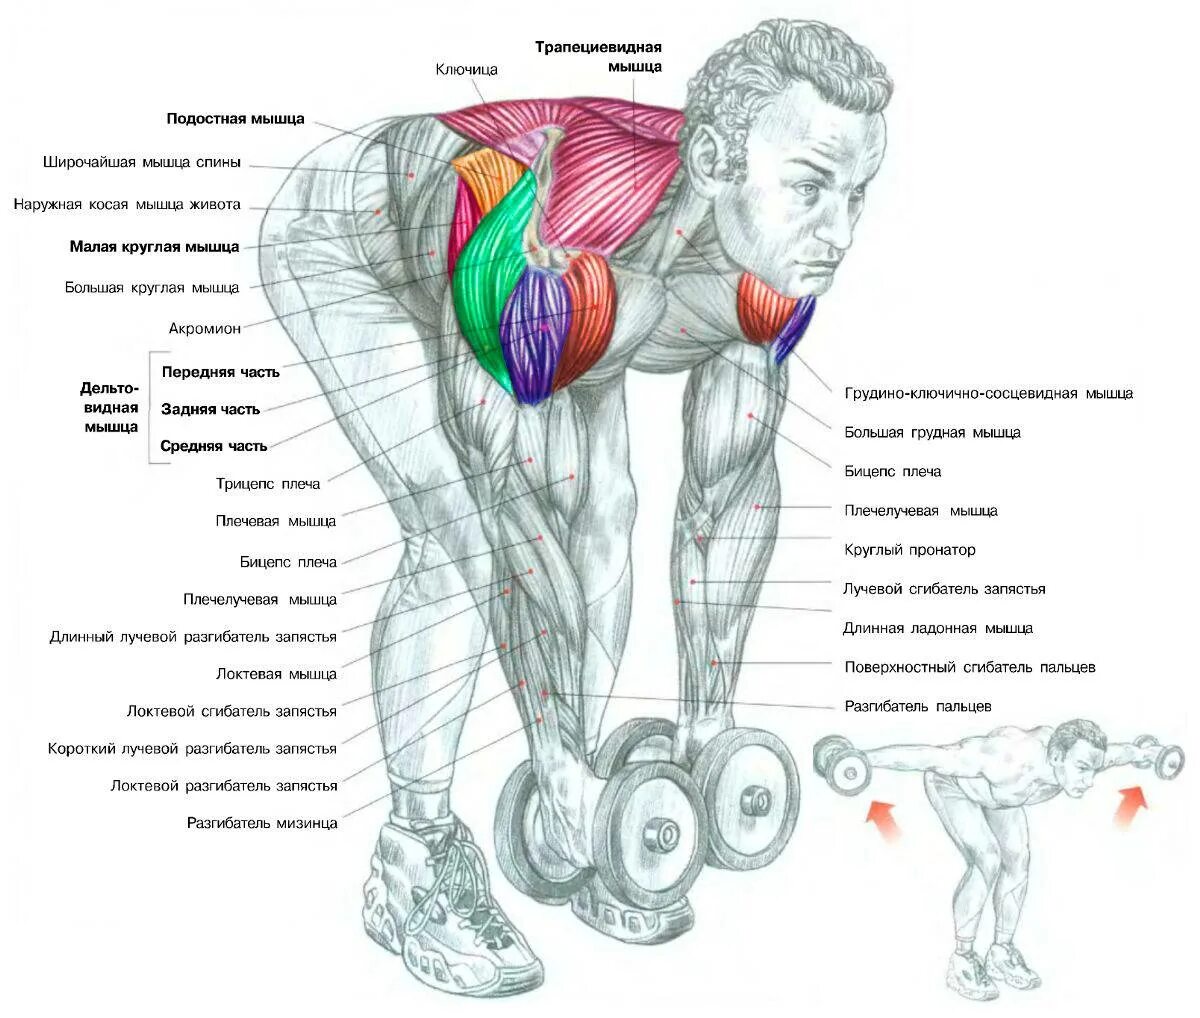 Гантели дельтовидные мышцы. Задний пучок дельтовидной мышцы упражнения. Тренировка дельтовидных мышц гантелями. Упражнения на дельтовидные мышцы с гантелями. Разведение гантель на заднюю дельту.